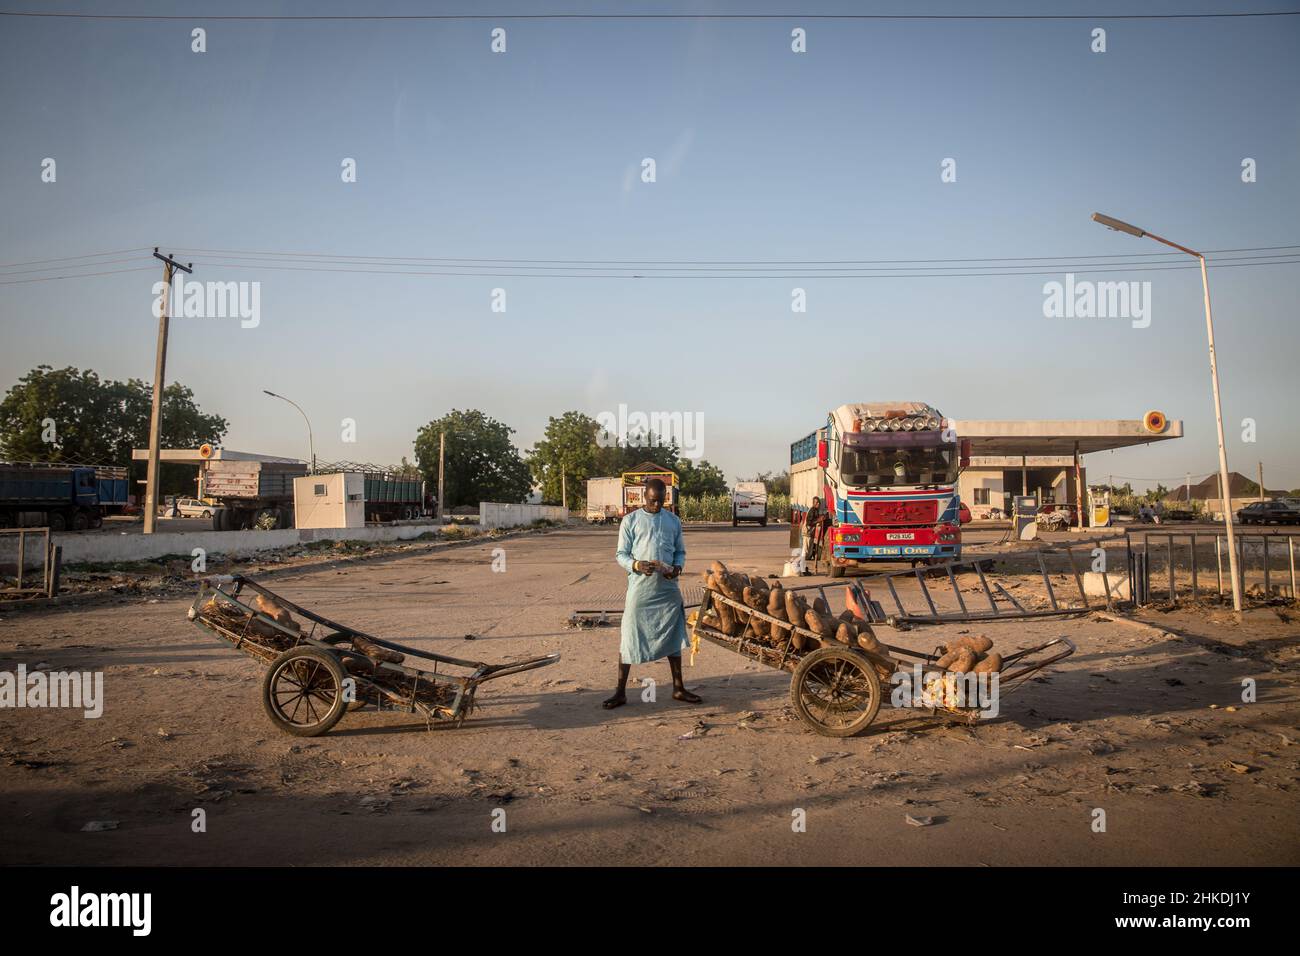 Maiduguri, Nigéria.27th novembre 2021.Un résident vu près de charrettes alors qu'il était sous les lignes électriques à Maiduguri, la capitale de l'État de Borno.le groupe militant islamique Boko Haram, et plus récemment une faction appelée ISWAP, mène une insurrection dans le nord-est du Nigeria depuis plus d'une décennie.Crédit : SOPA Images Limited/Alamy Live News Banque D'Images